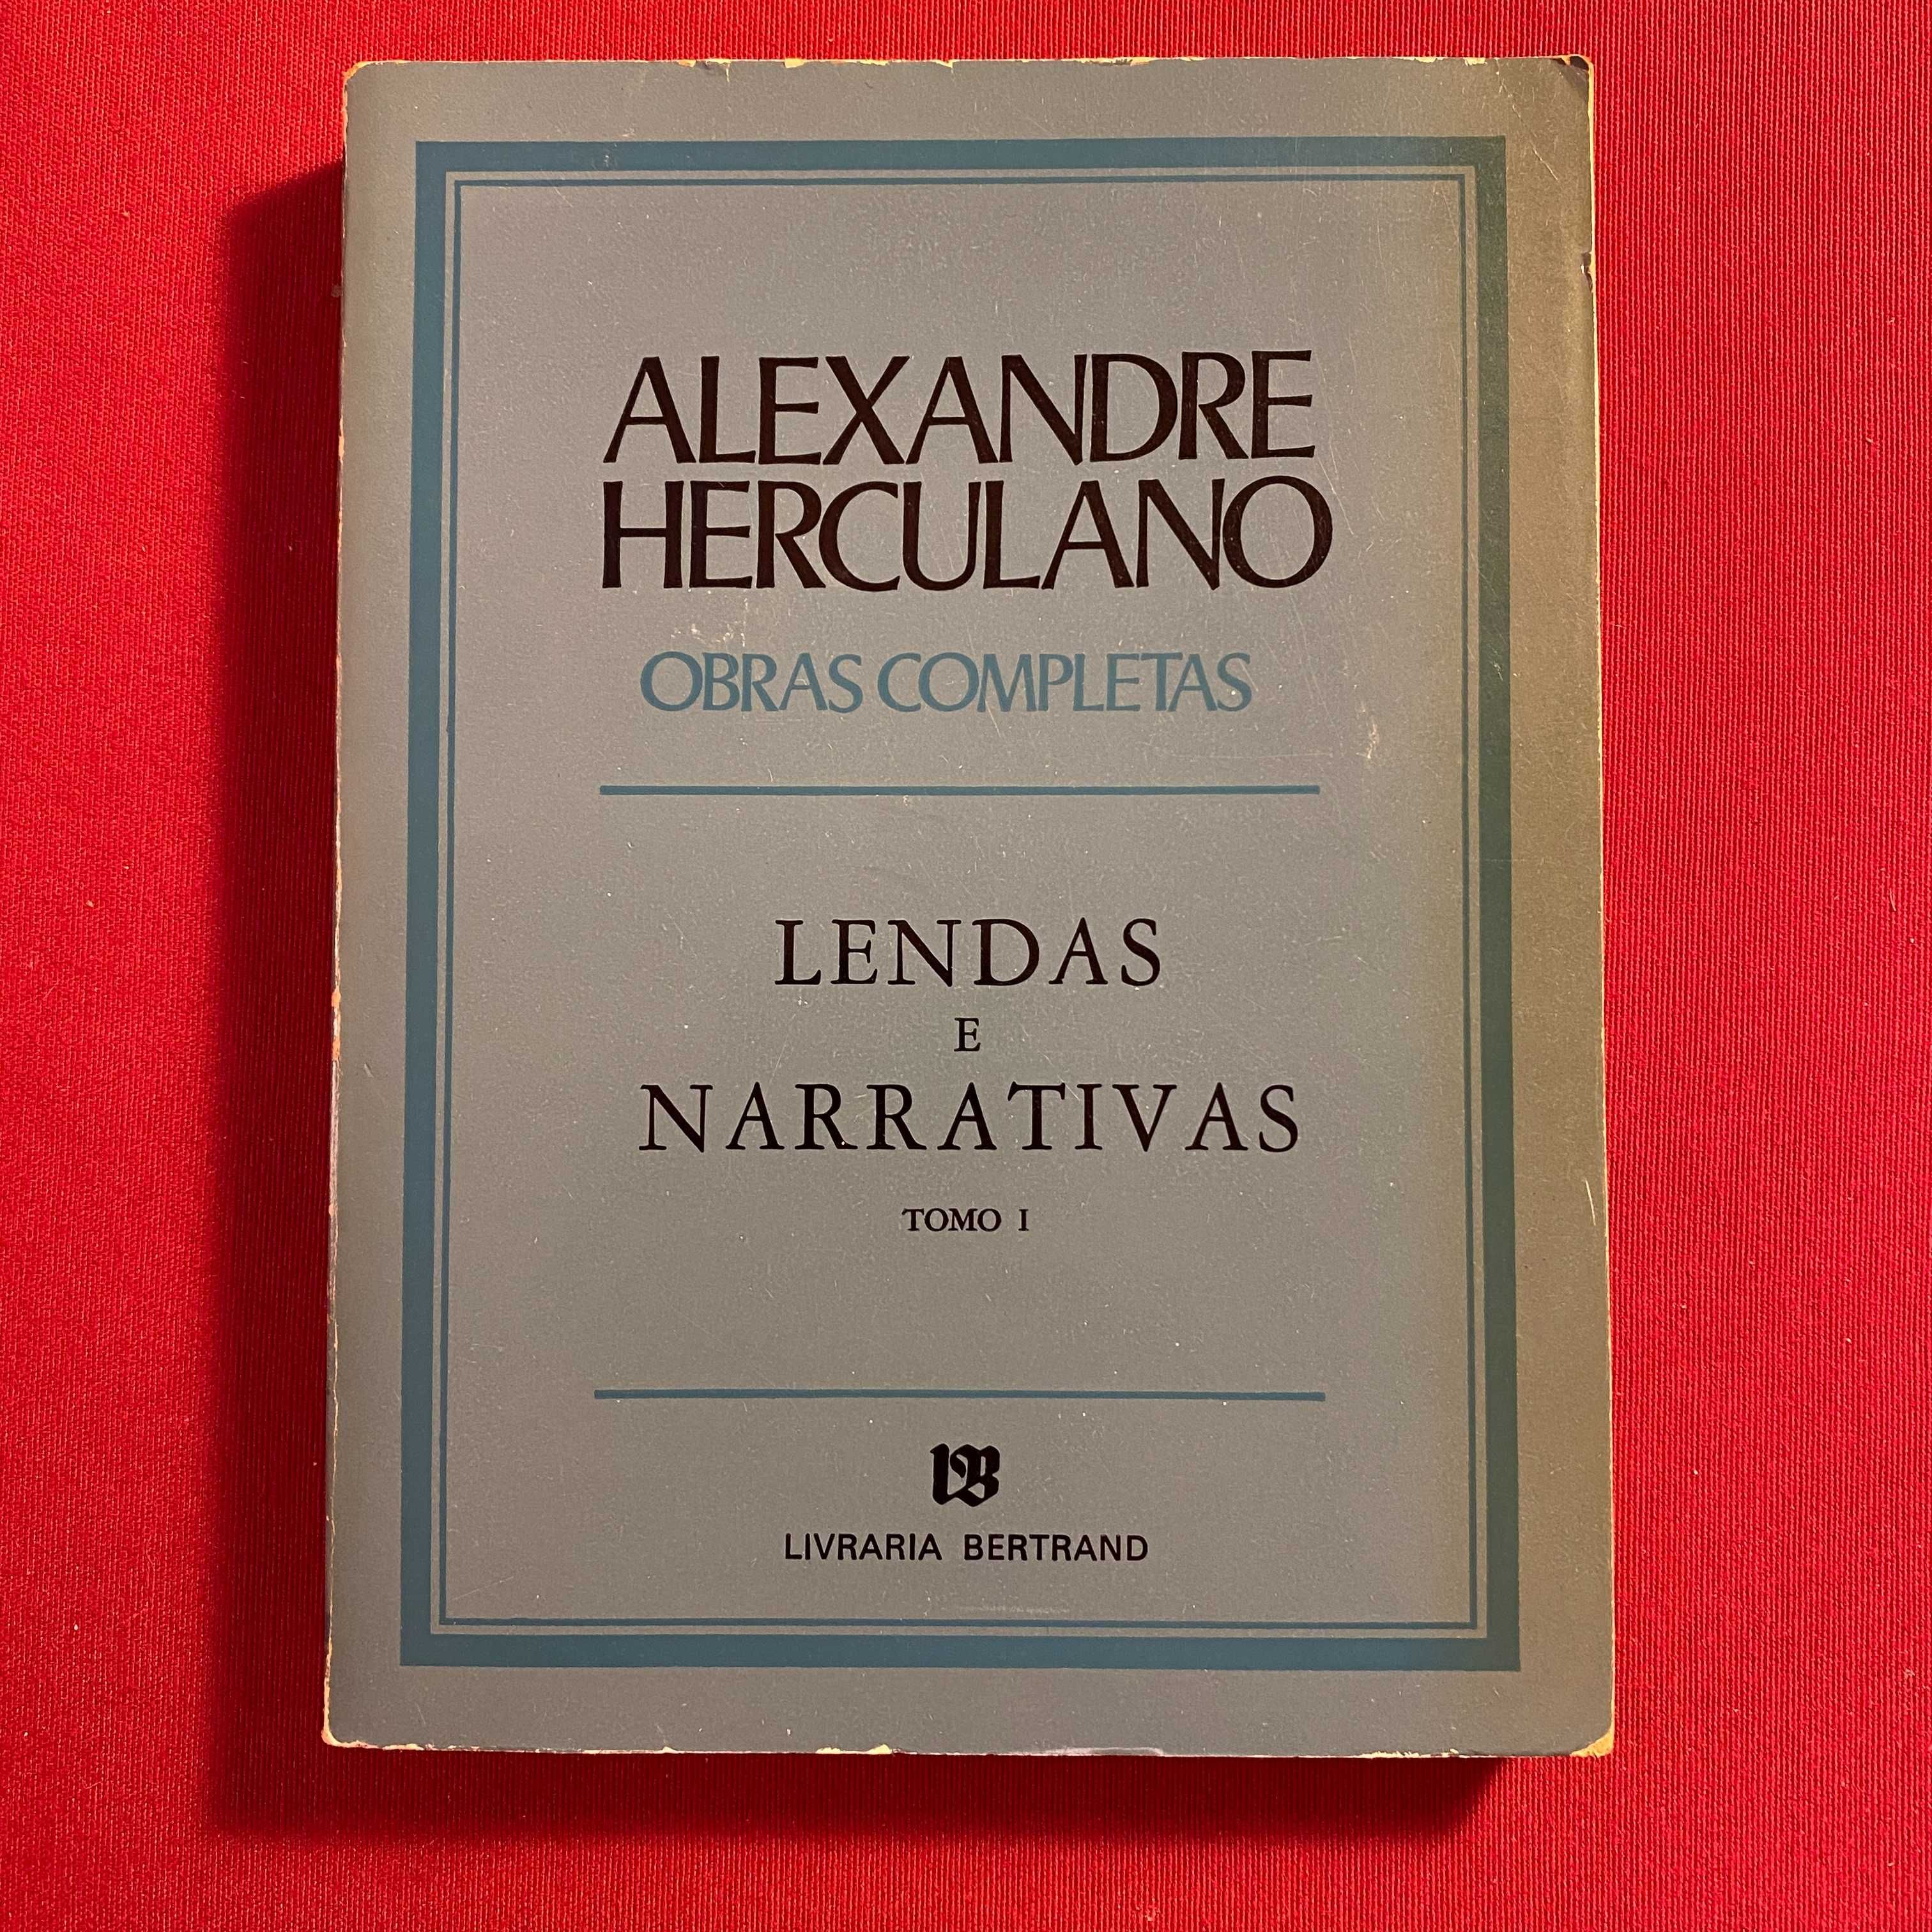 Lenda e Narrativas - TOMO I Autor: Alexandre Herculano